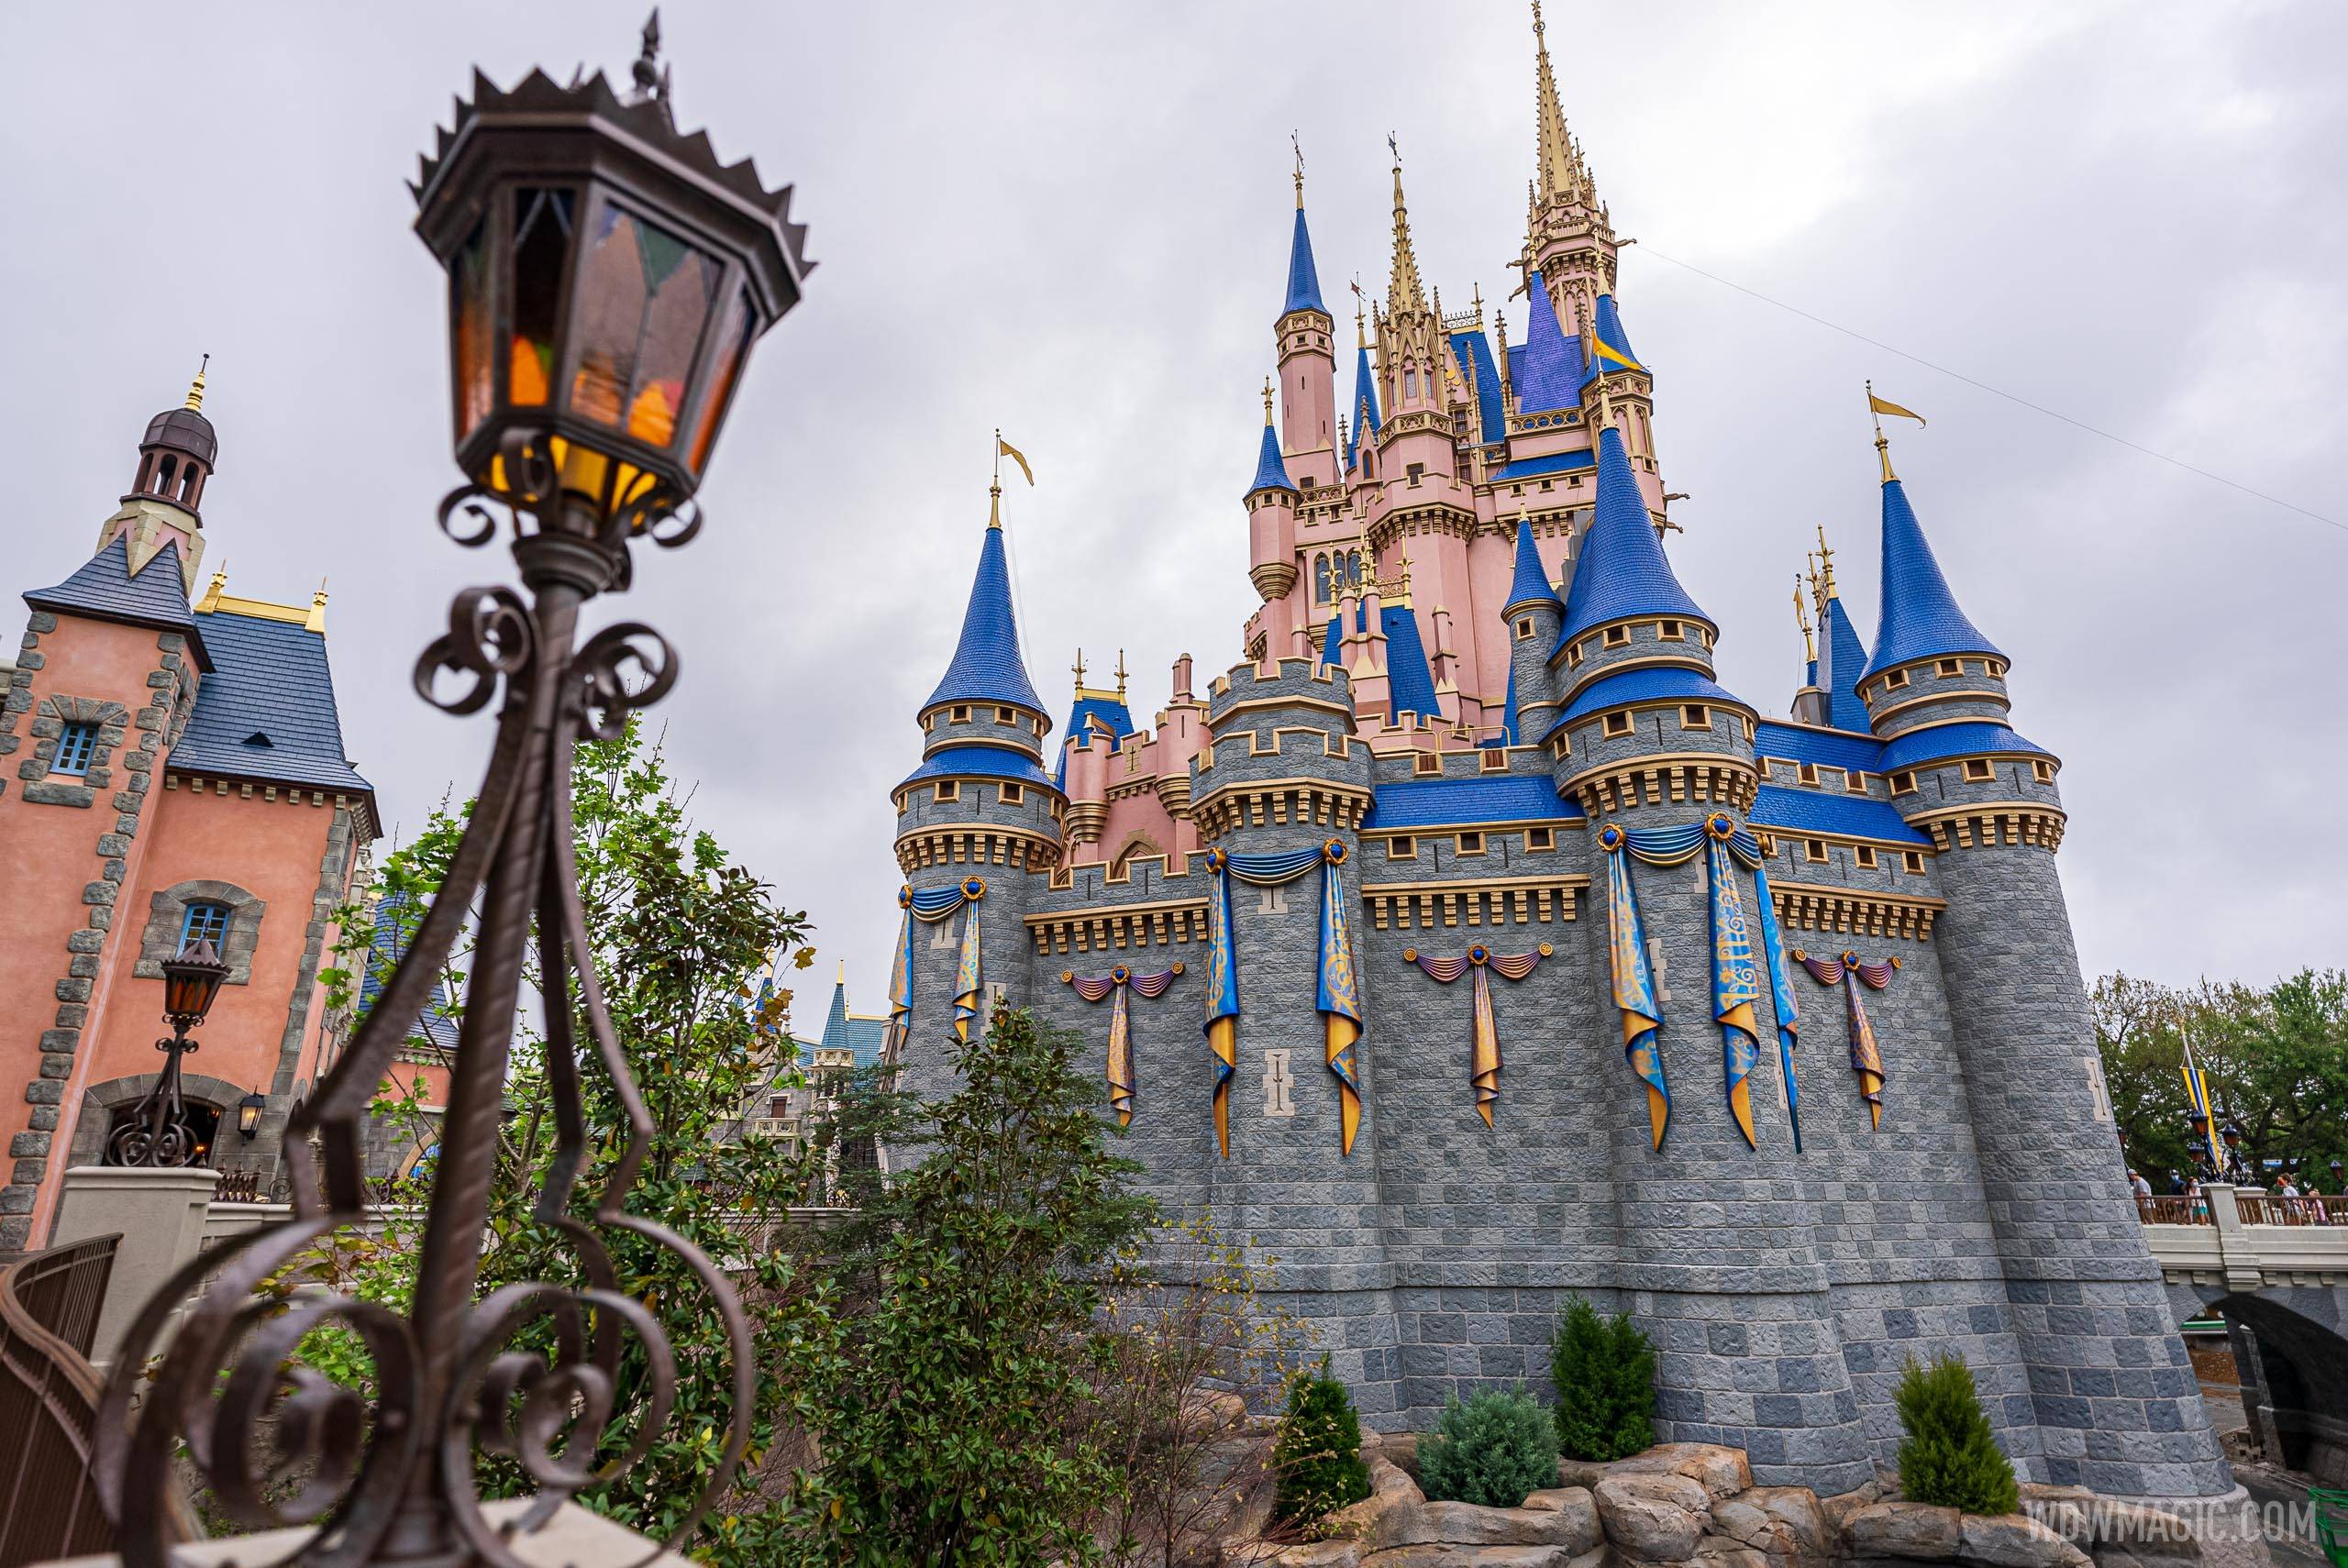 50th anniversary Cinderella Castle additions - March 29 2021